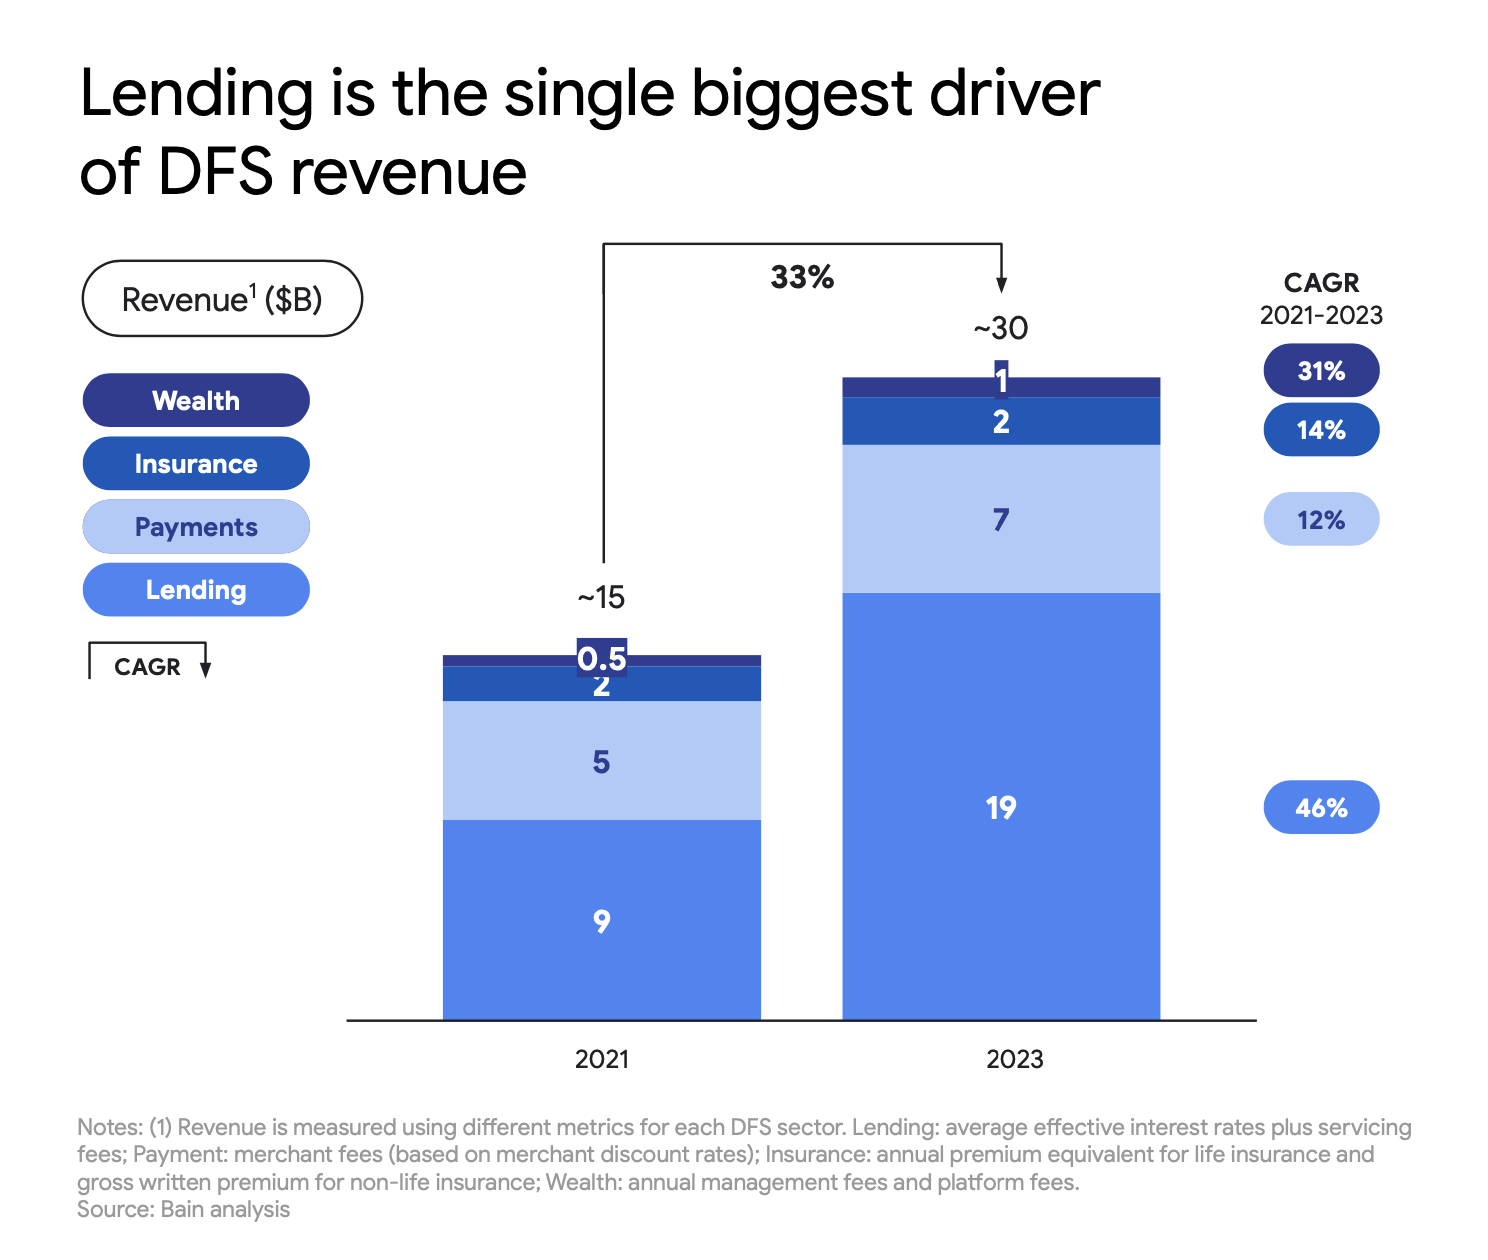 Lending as single biggest driver of DFS revenue